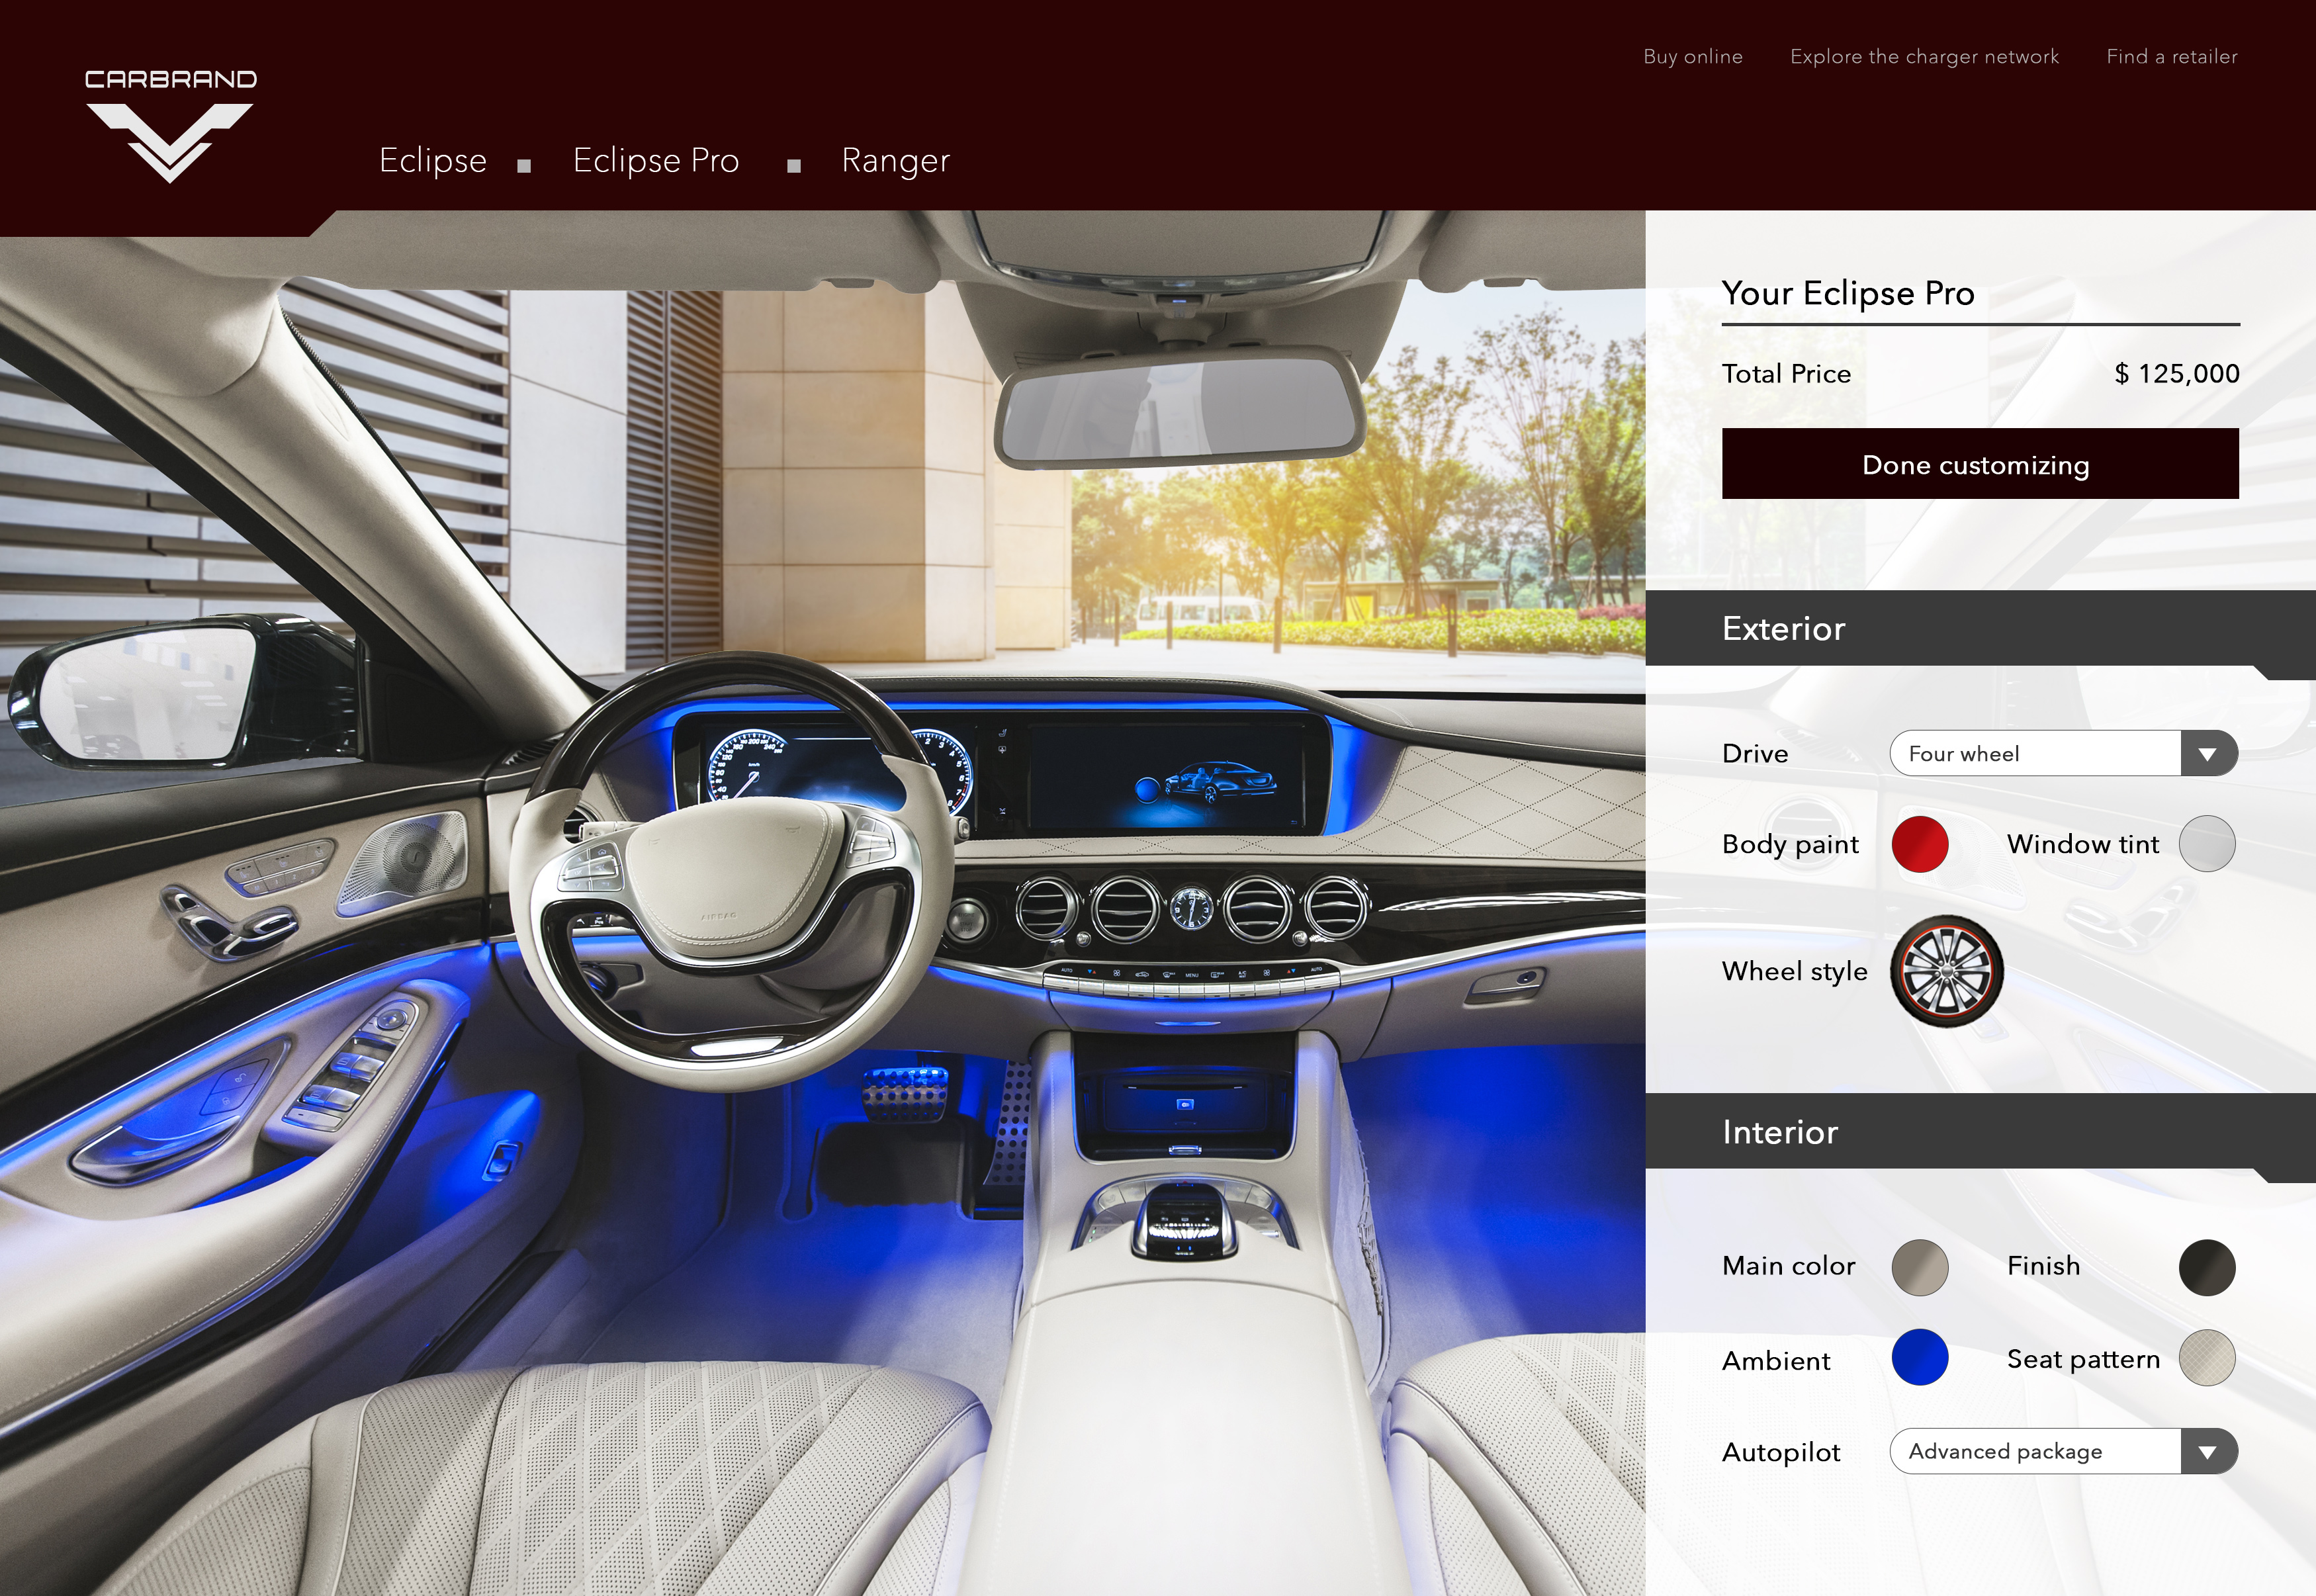 Vehicle customization page